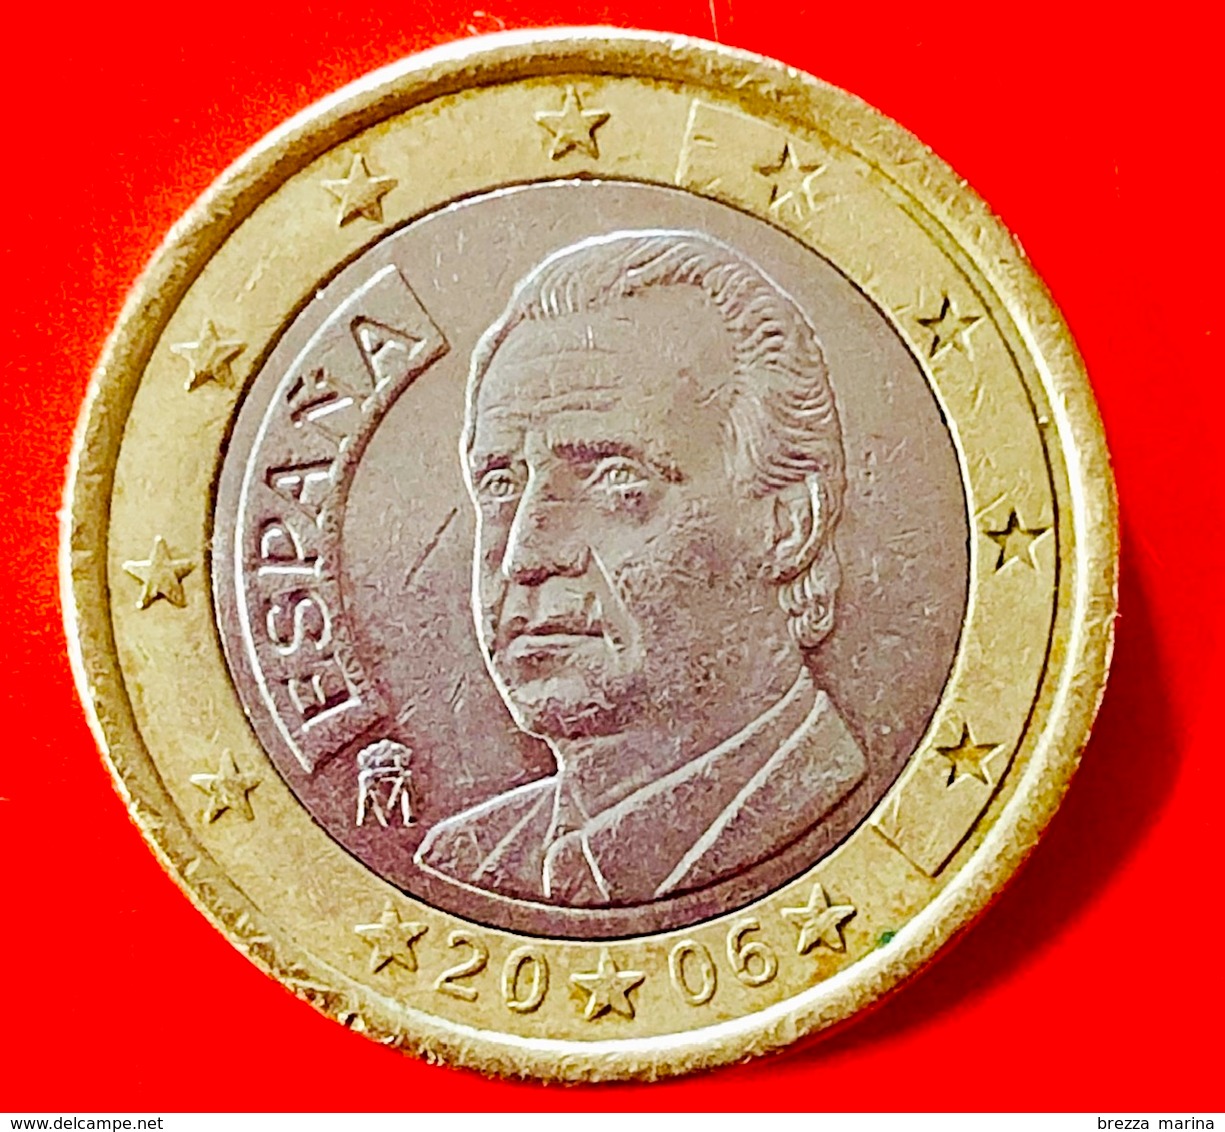 SPAGNA - 2006 - Moneta - Ritratto Di Re Juan Carlos I Di Borbone - Euro - 1.00 - Slovenia